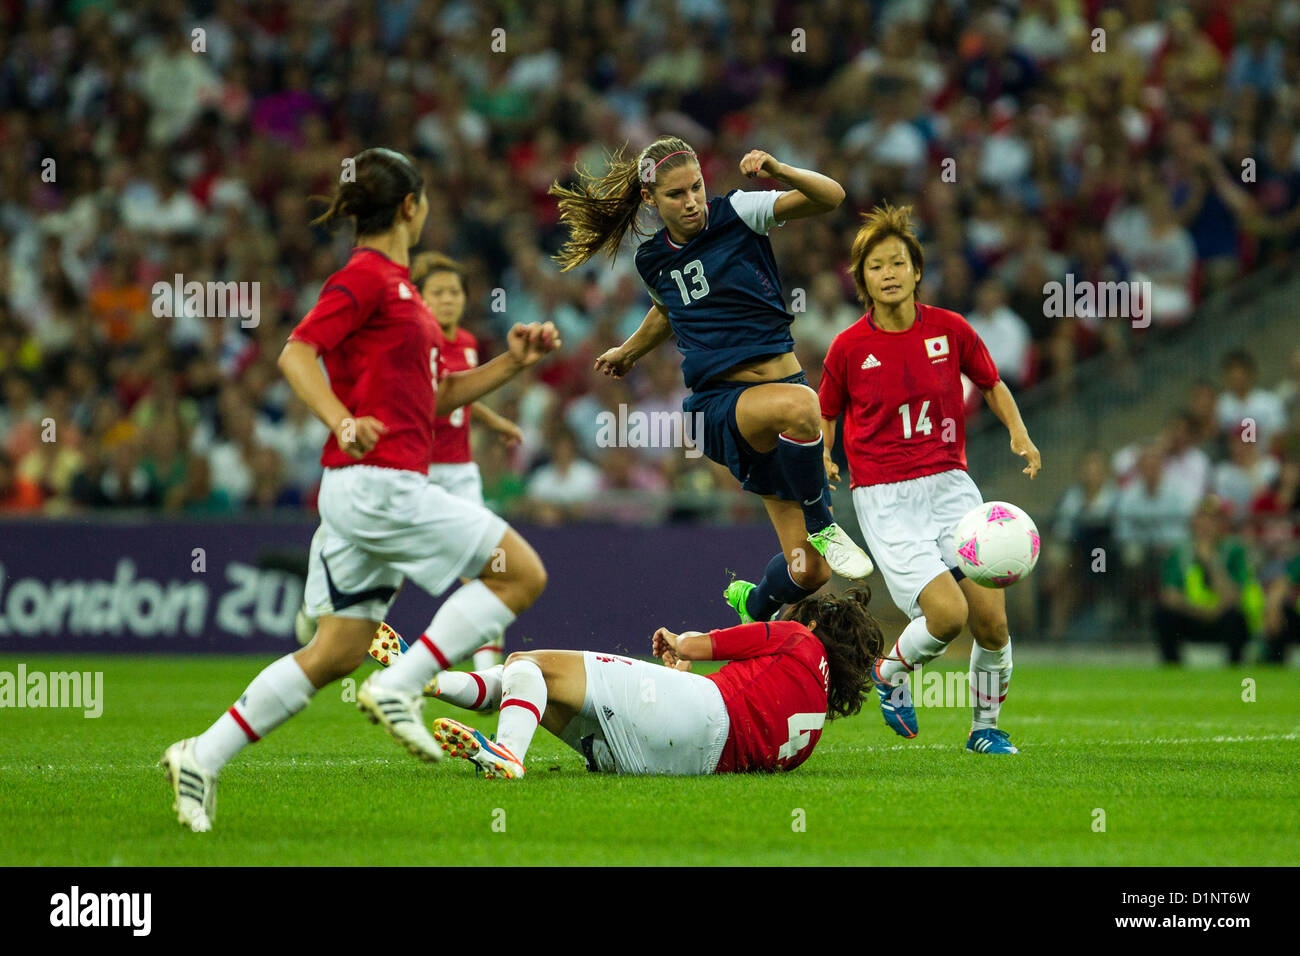 Alex Morgan (USA)-USA remporte l'or sur le Japon en femmes Football (soccer) aux Jeux Olympiques d'été, Londres 2012 Banque D'Images